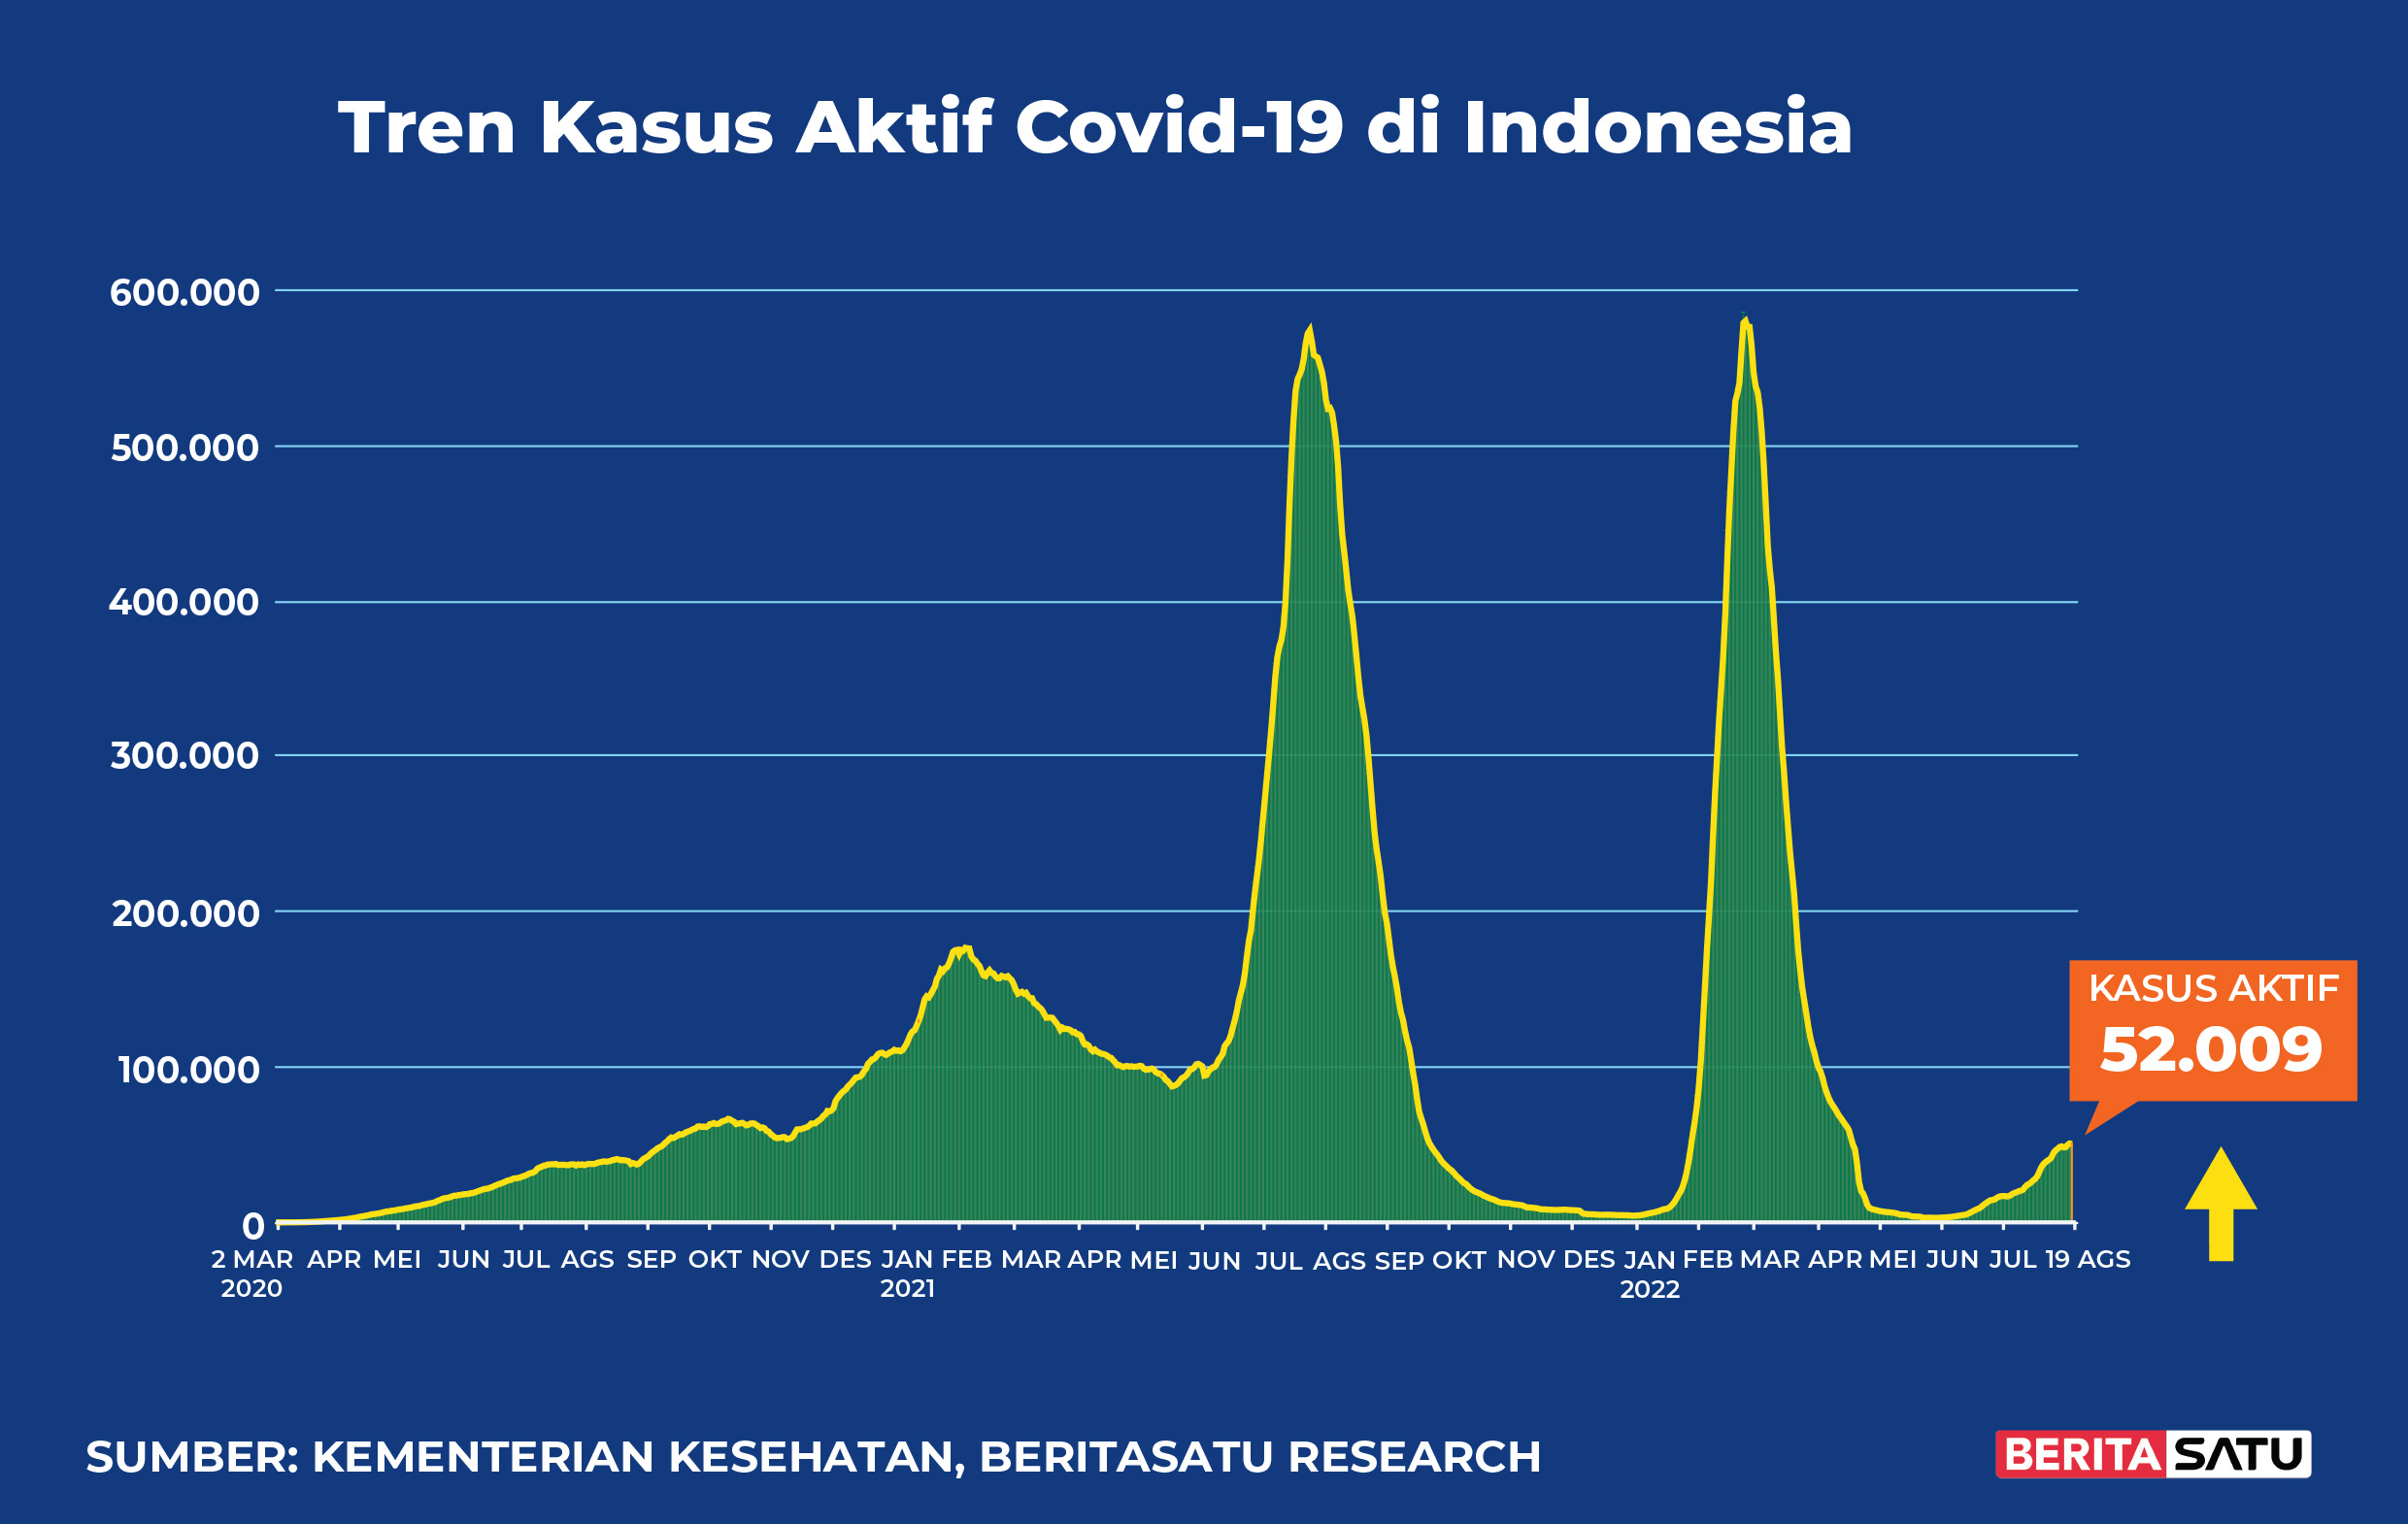 Kasus Aktif Covid-19 di Indonesia sampai 19 Agustus 2022